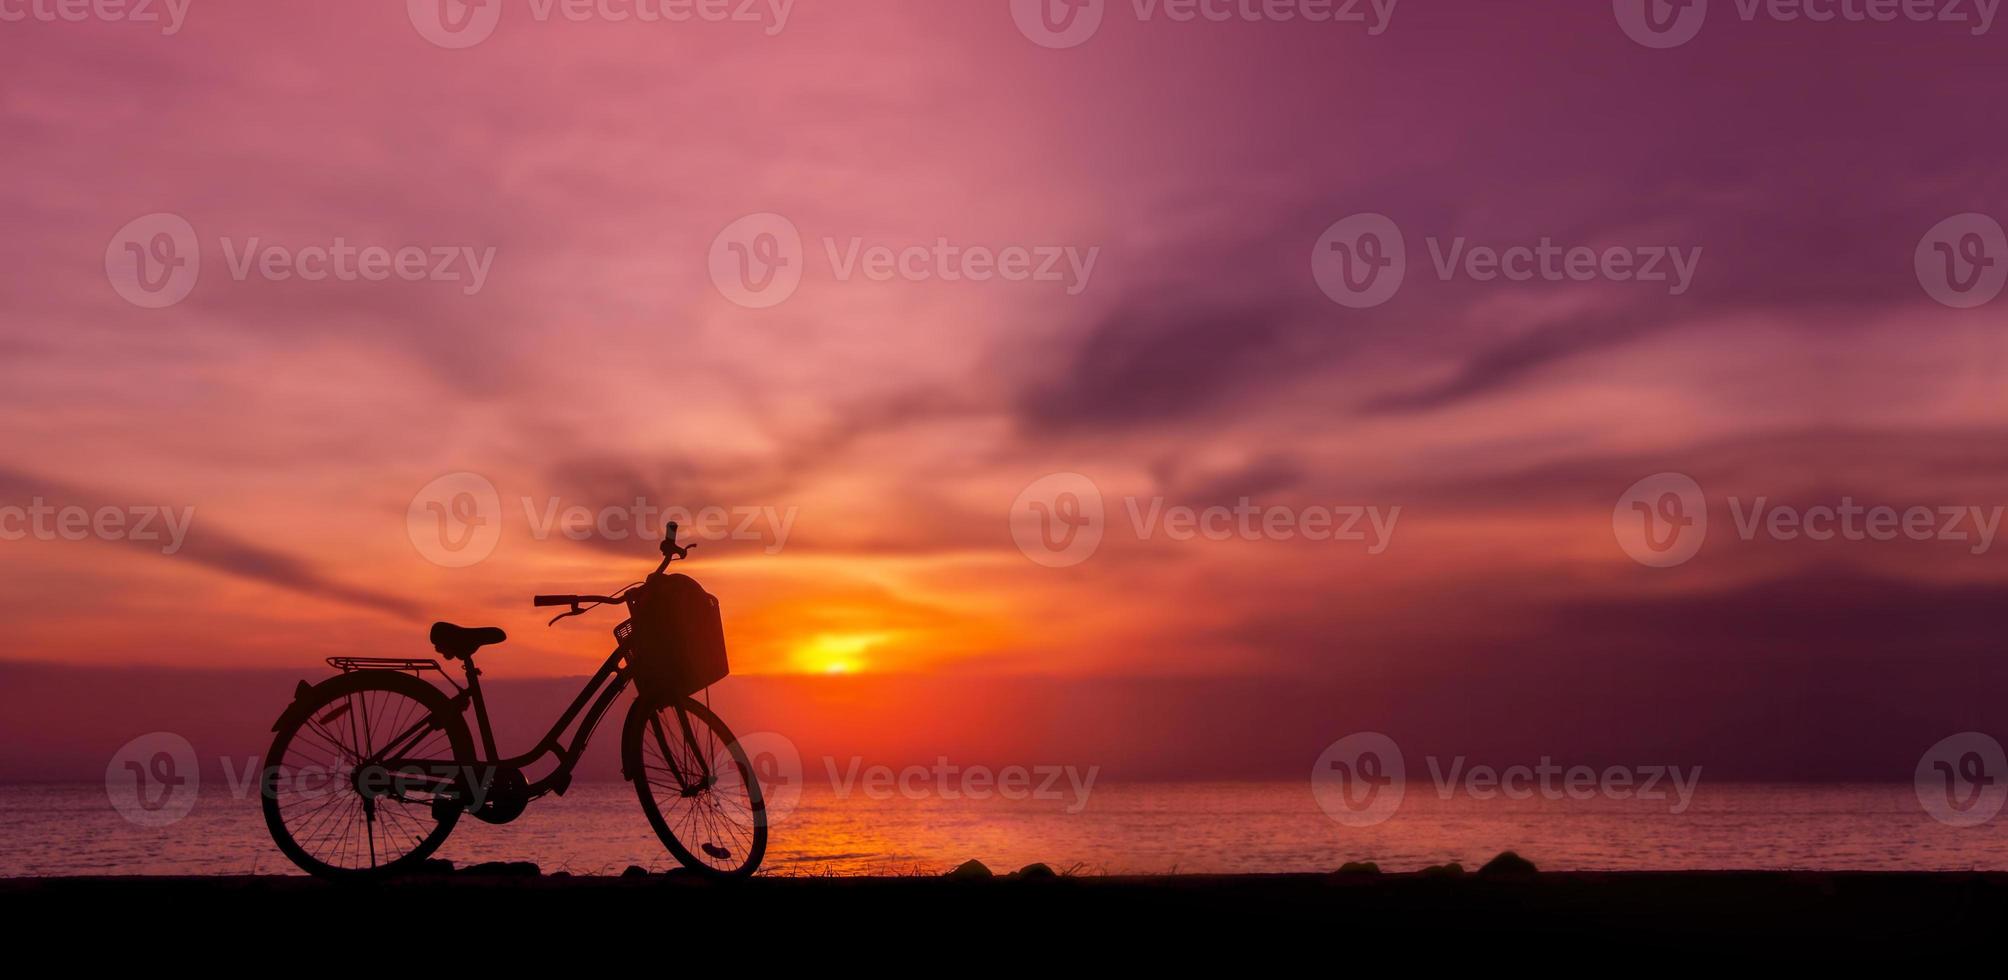 photo de silhouette du parc à vélos devant le lac au coucher du soleil. ciel crépusculaire et lac en arrière-plan. un véhicule zéro carbone en pleine nature. protection de l'environnement et mode de vie durable